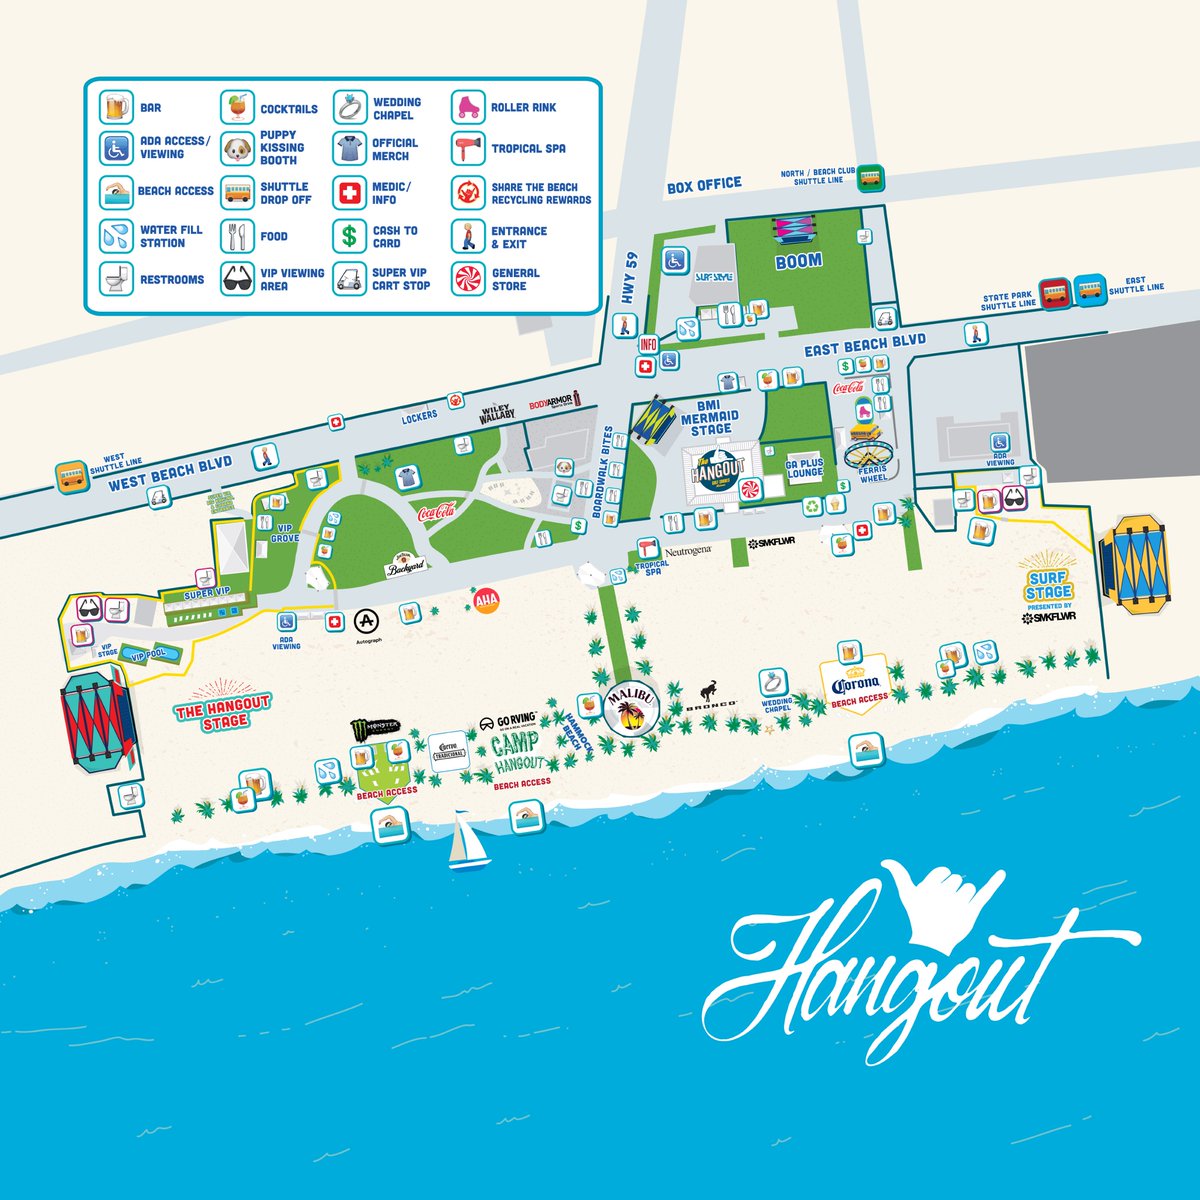 2022 Hangout Fest map